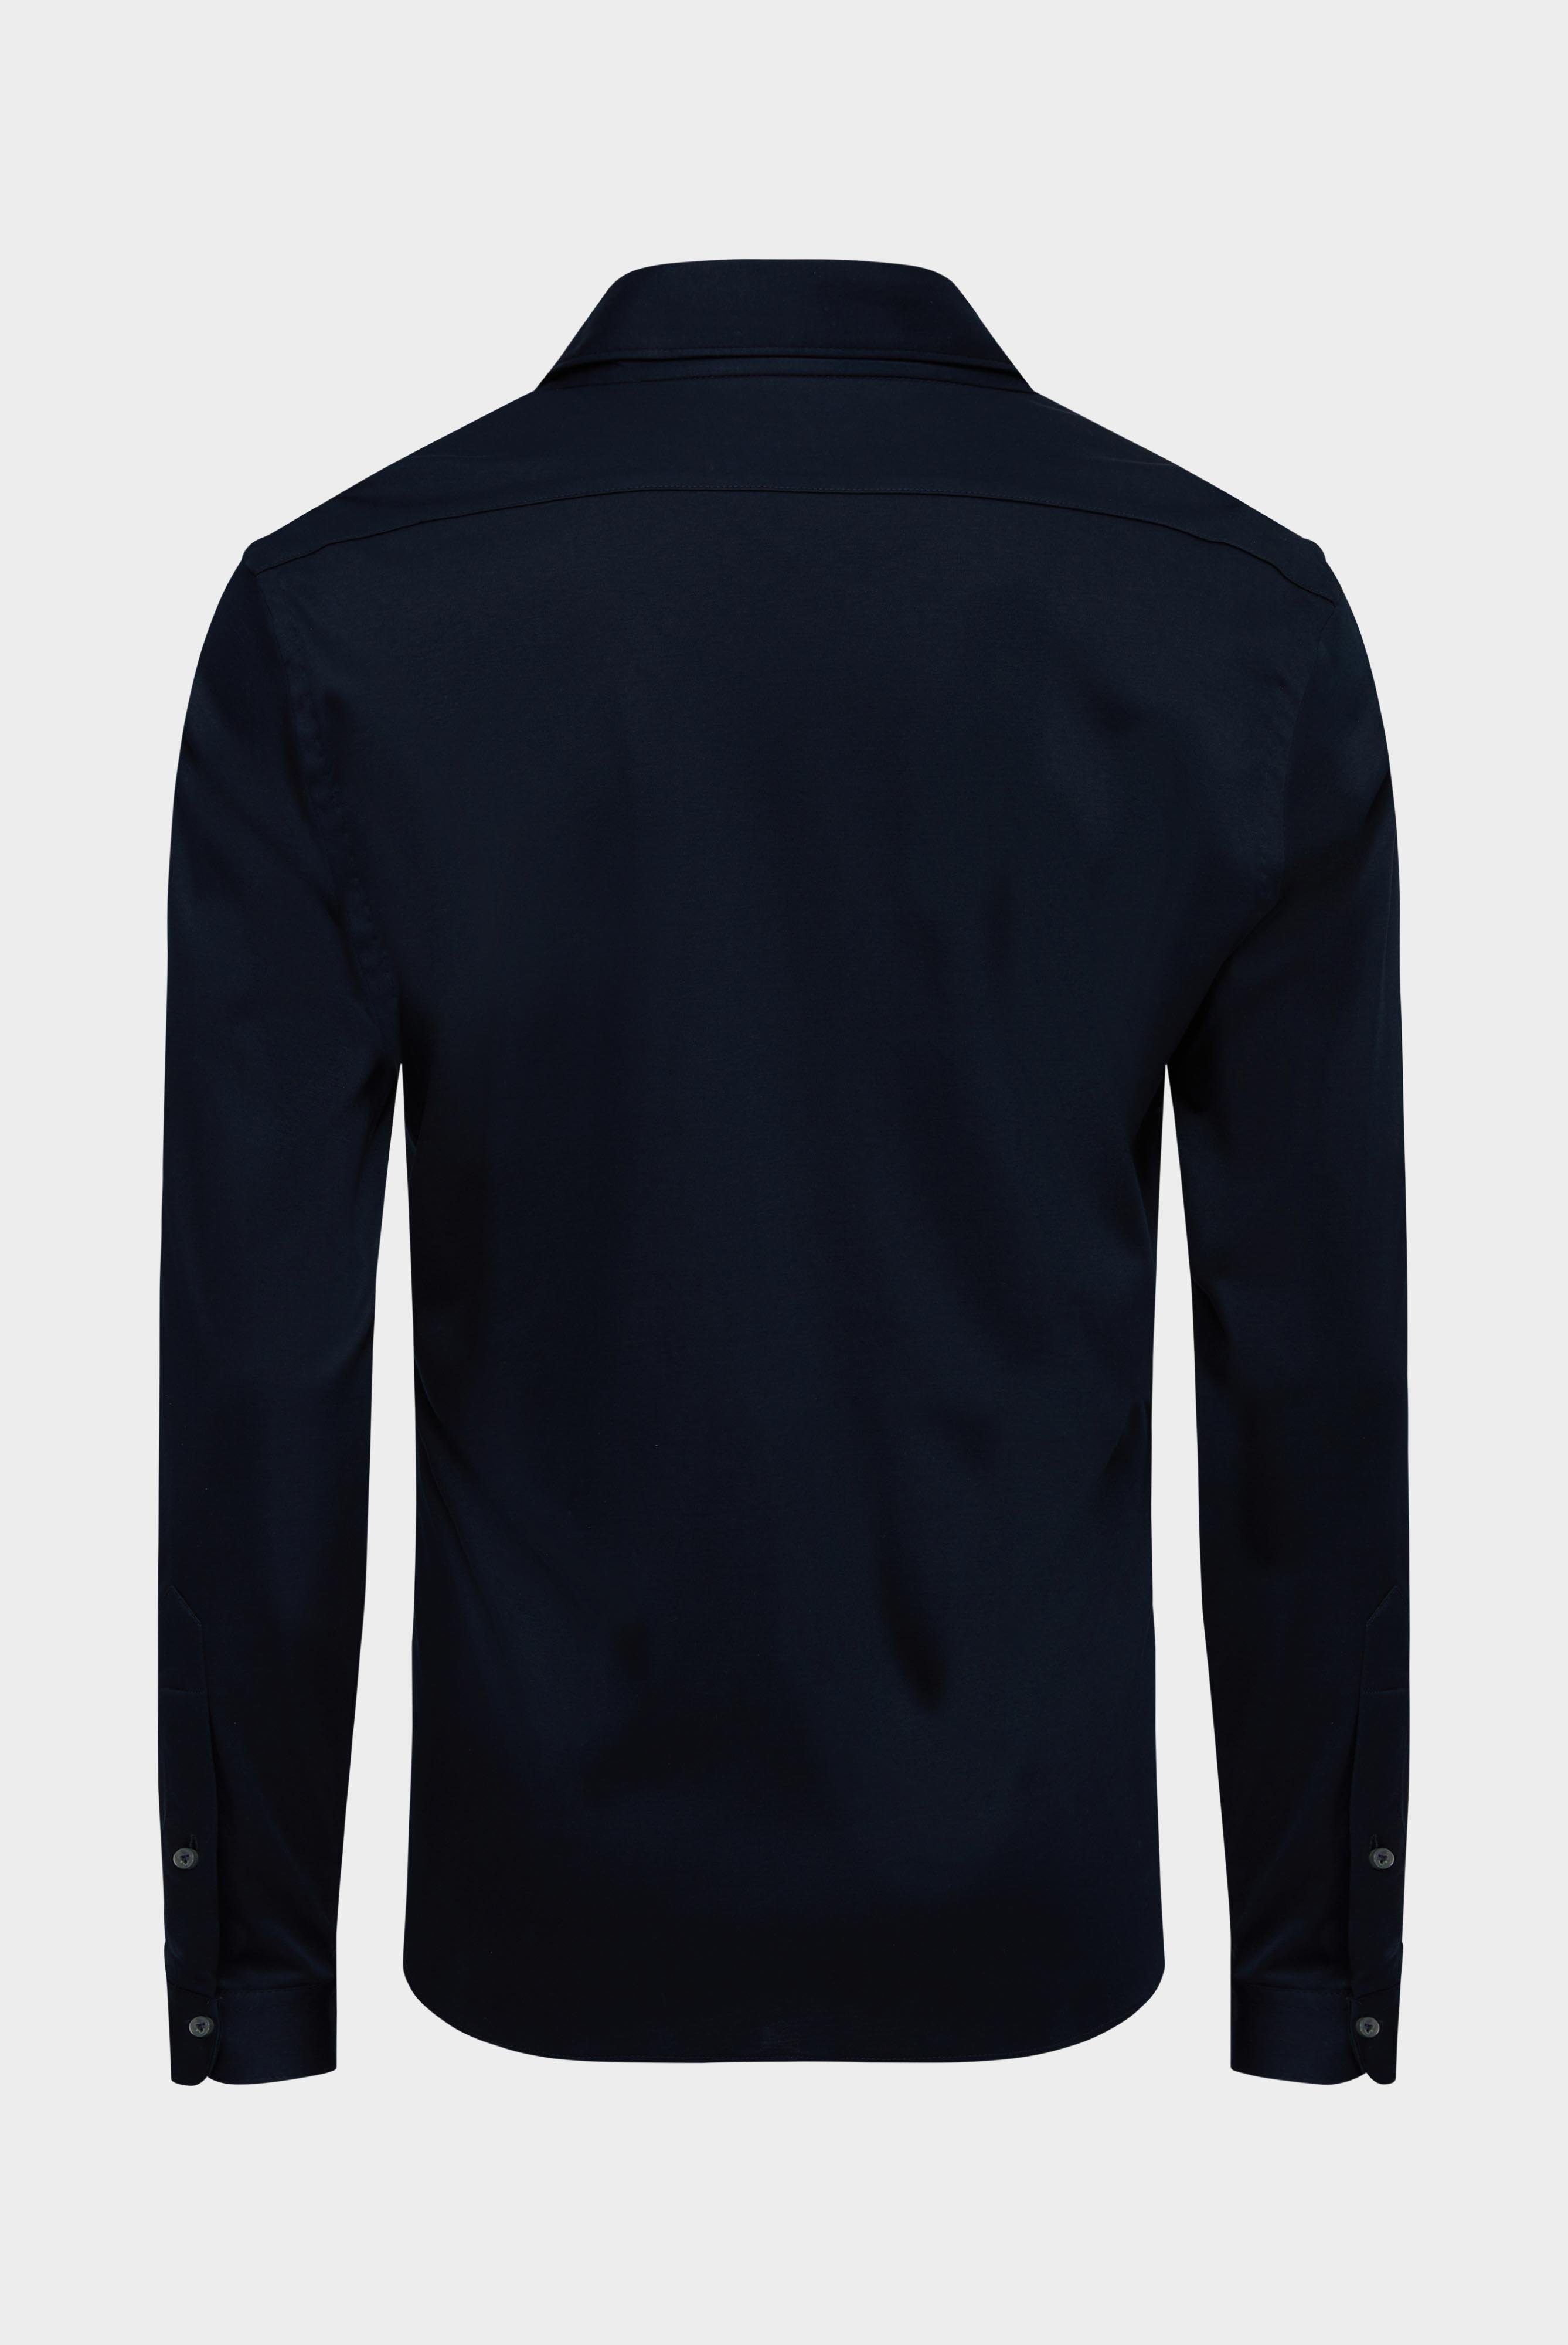 Bügelleichte Hemden+Jersey Hemd mit glänzender Optik Tailor Fit+20.1683.UC.180031.790.X4L